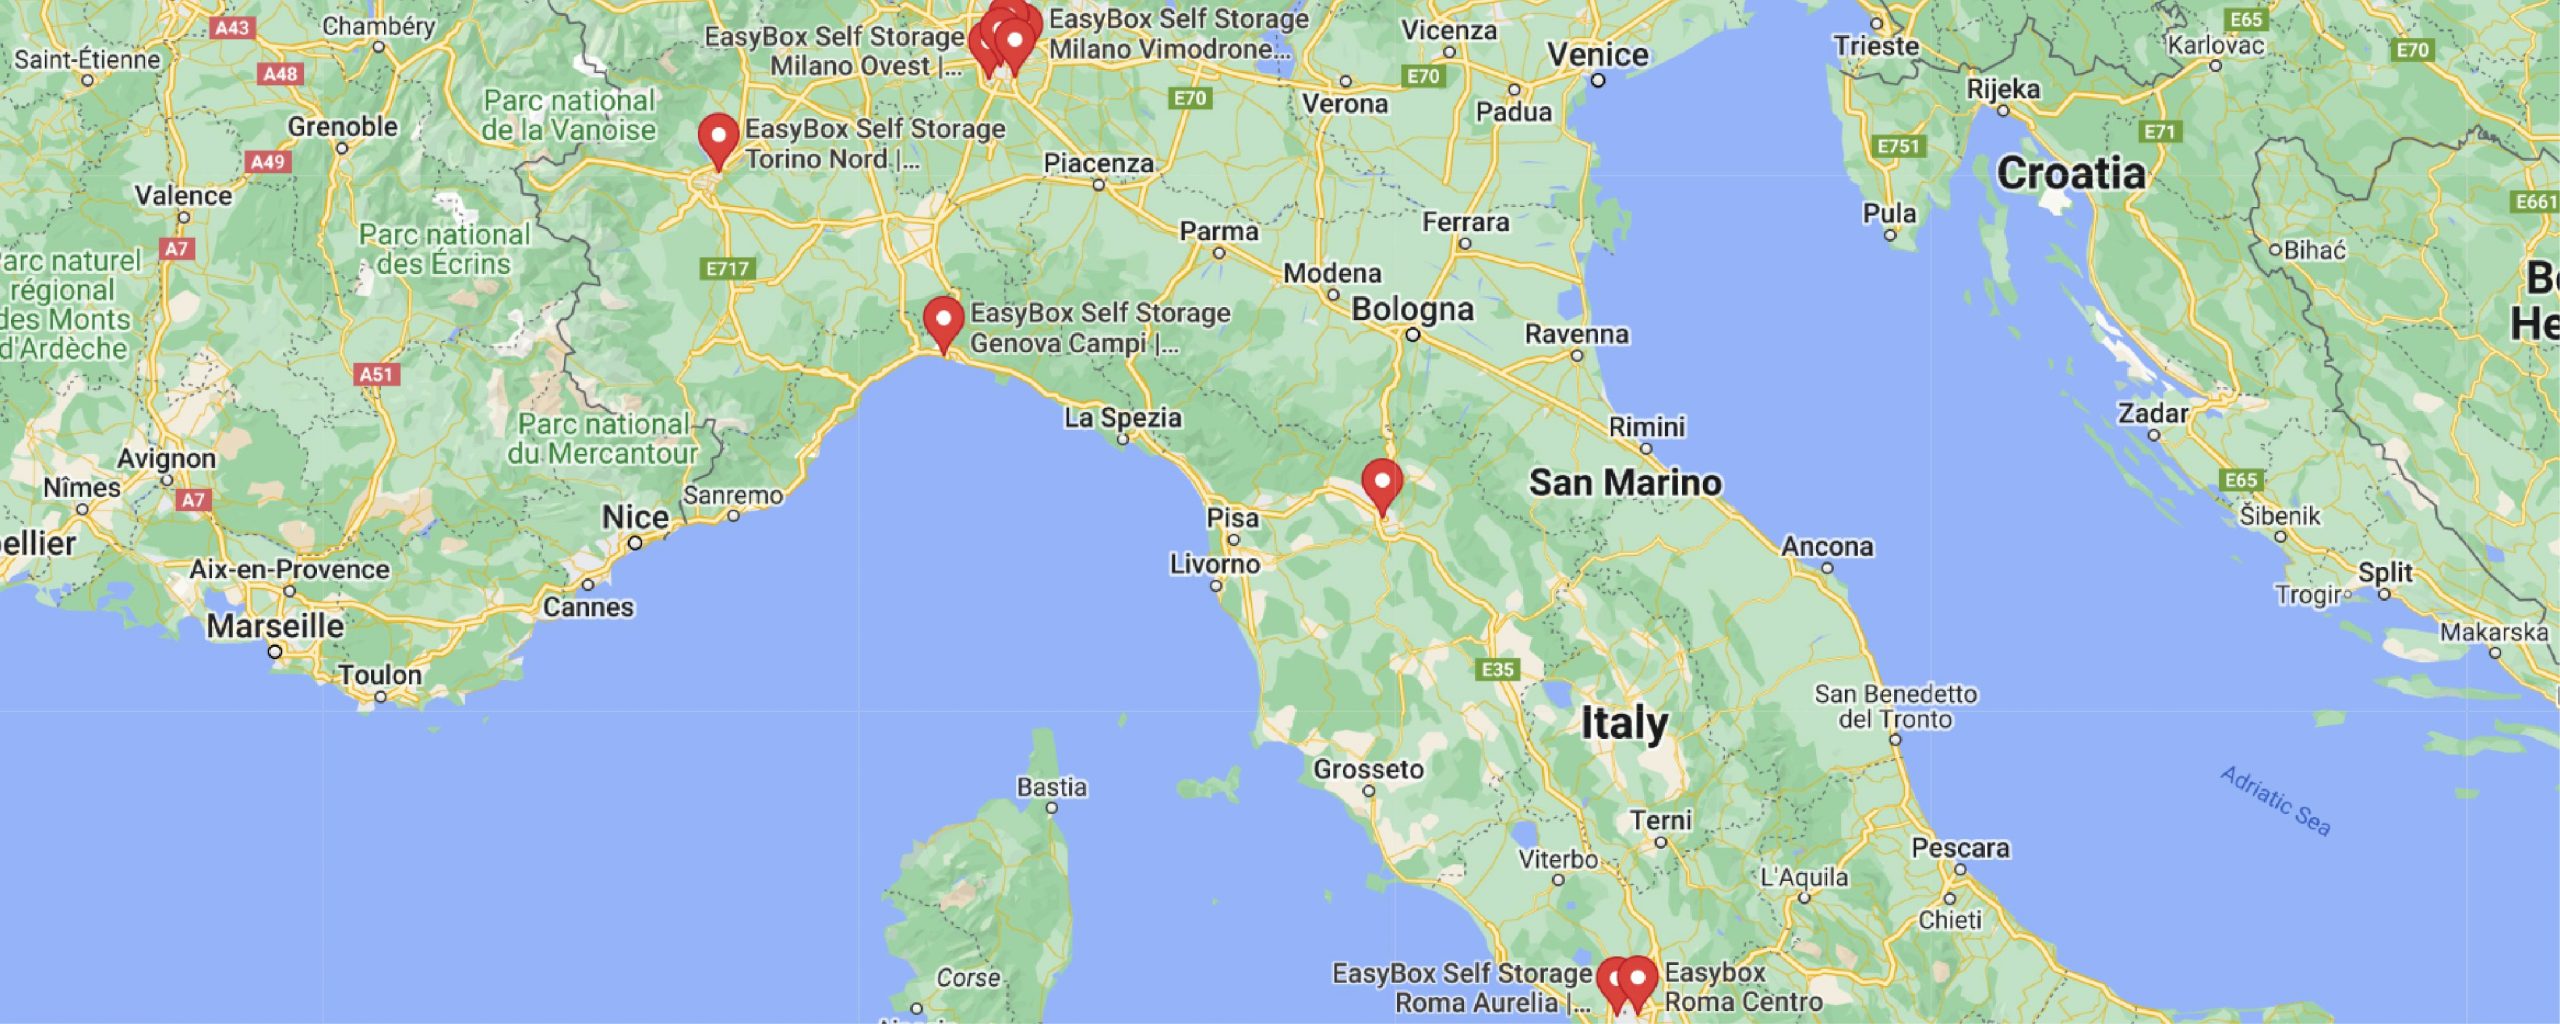 mappa dell’Italia con i punti delle sedi EasyBox in rosso